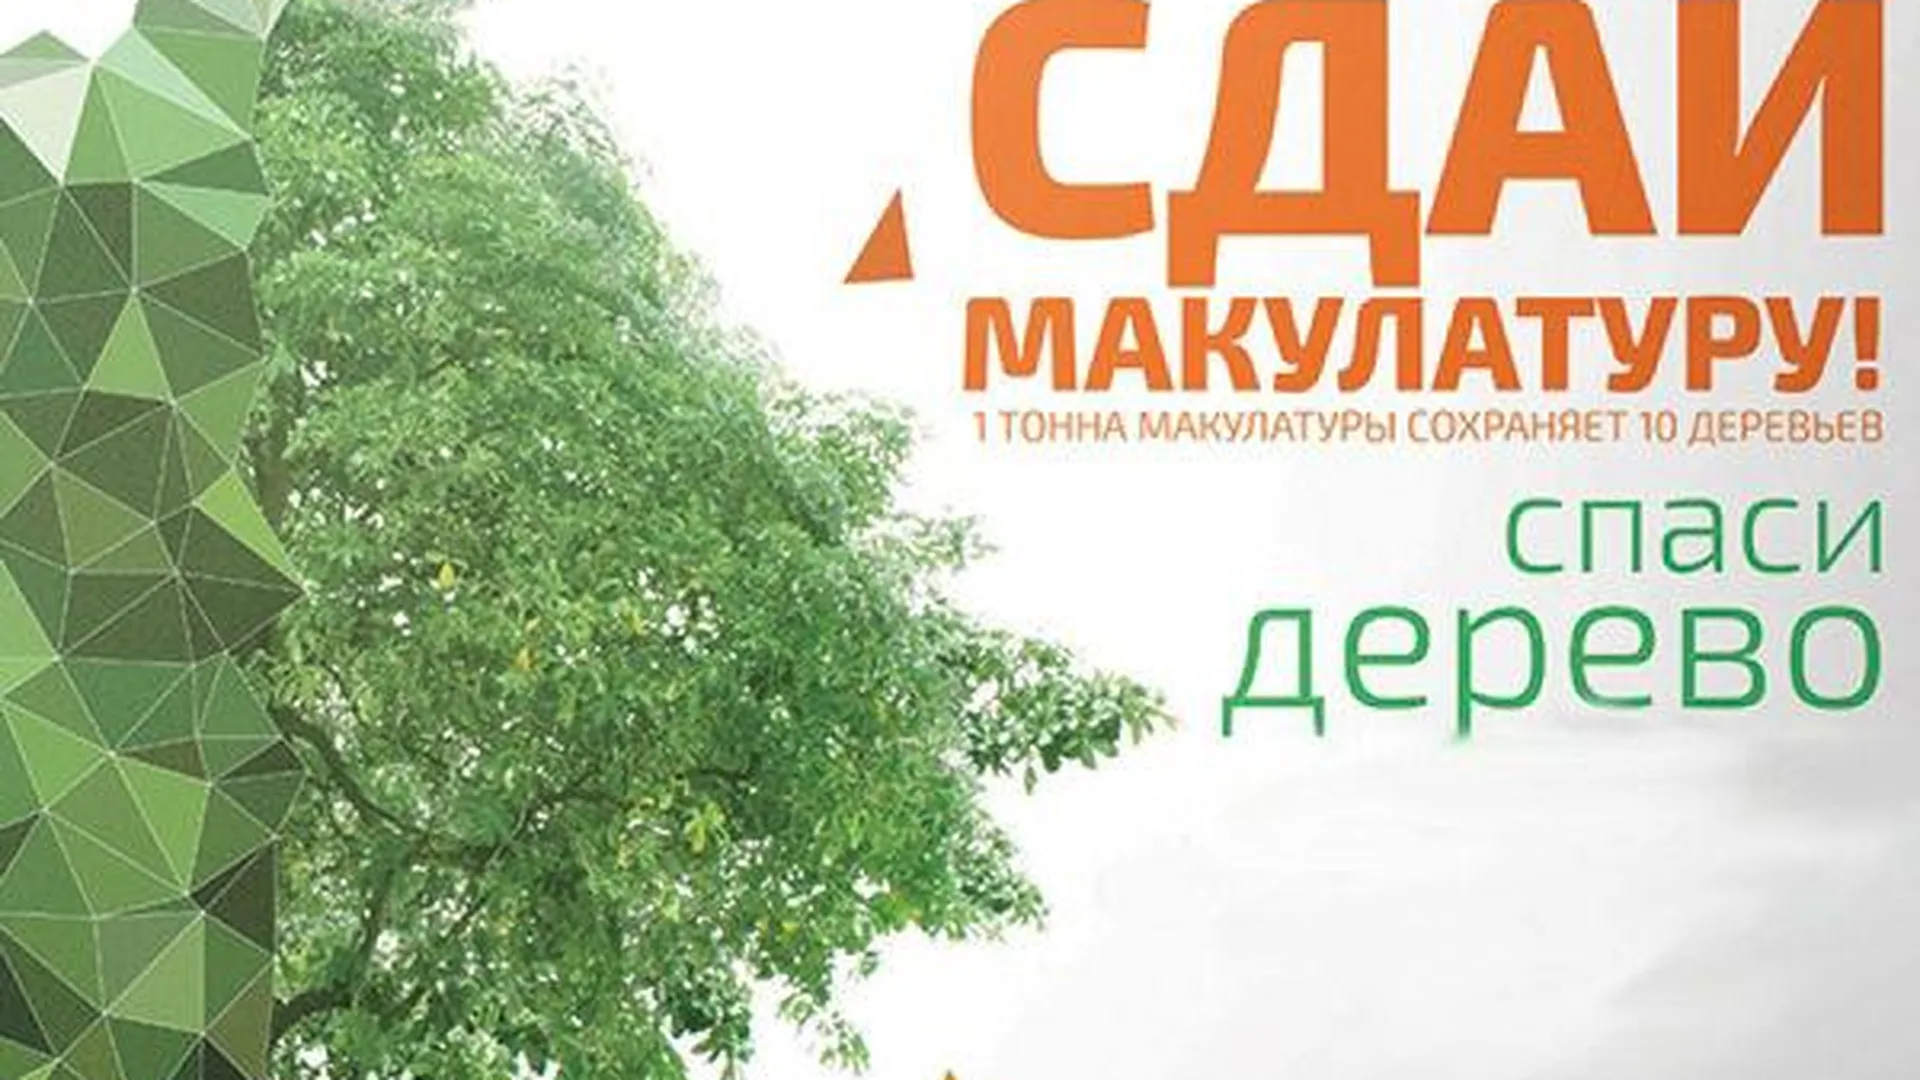 Областной эко-марафон пройдет в Солнечногорске 26 сентября